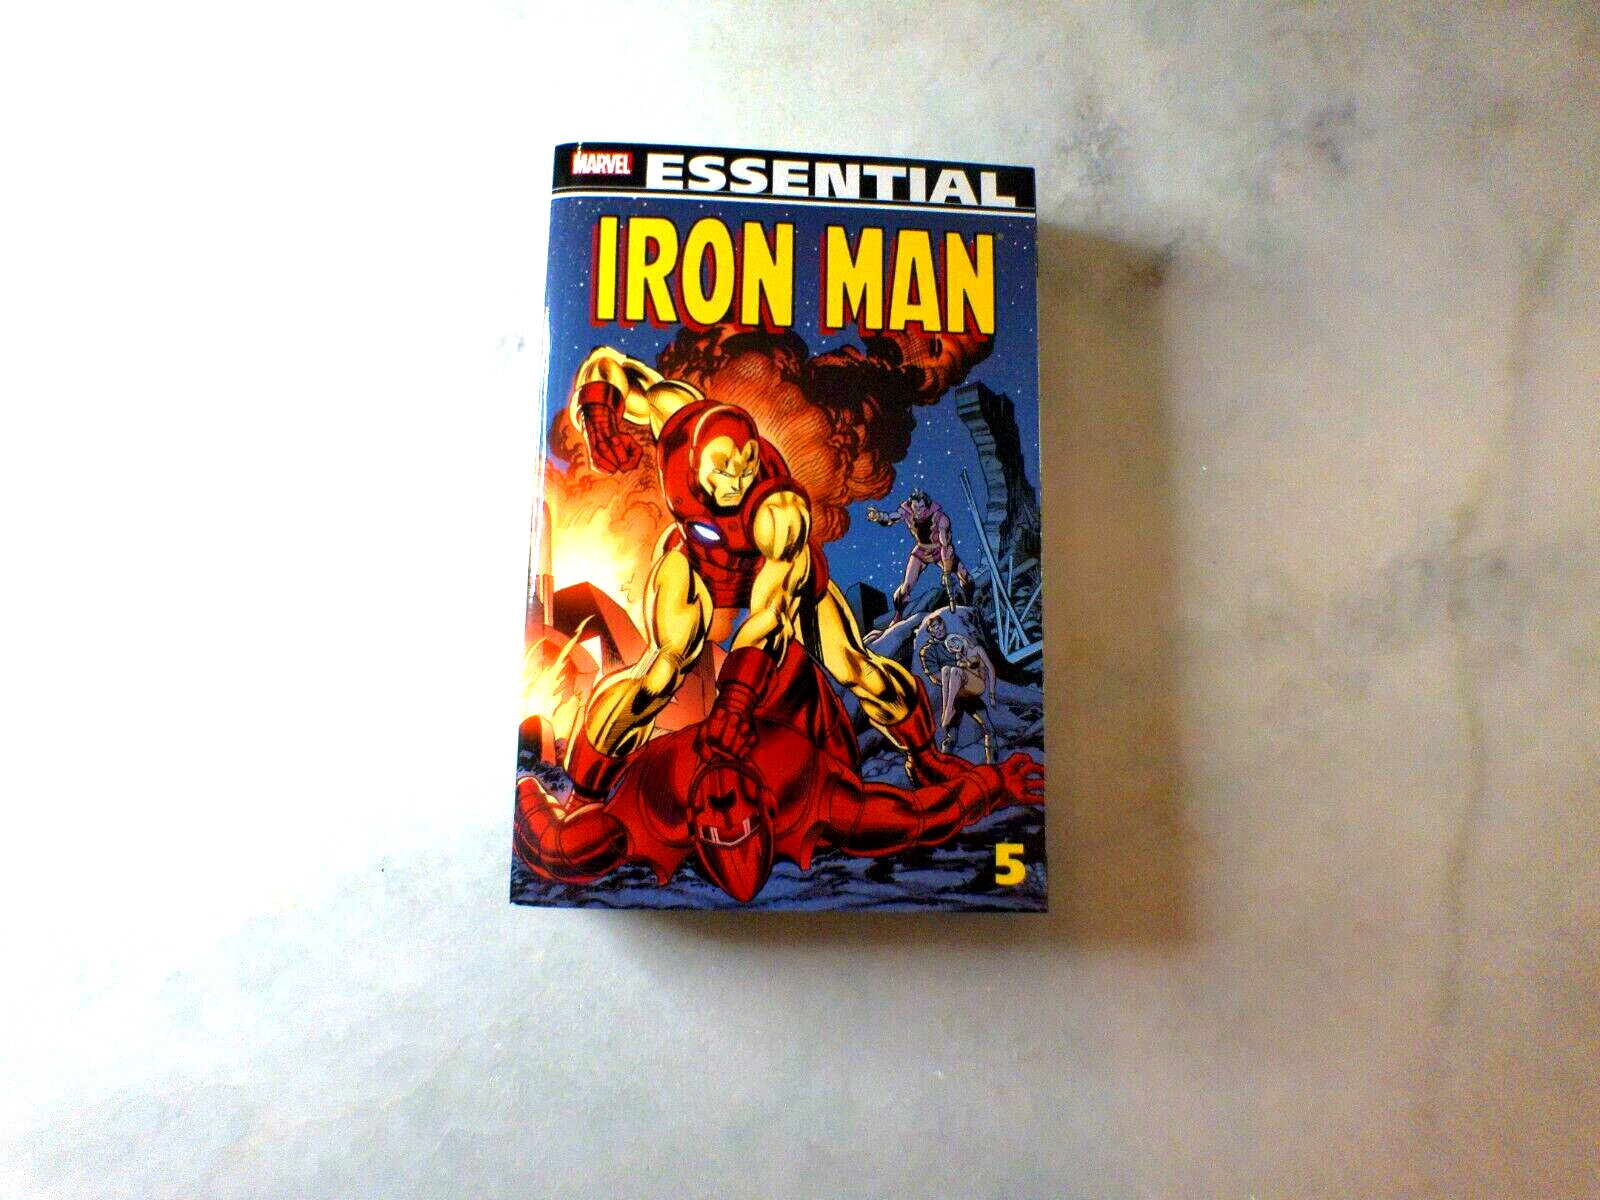 Essential Iron Man Volume 5 HTF OOP TPB Marvel